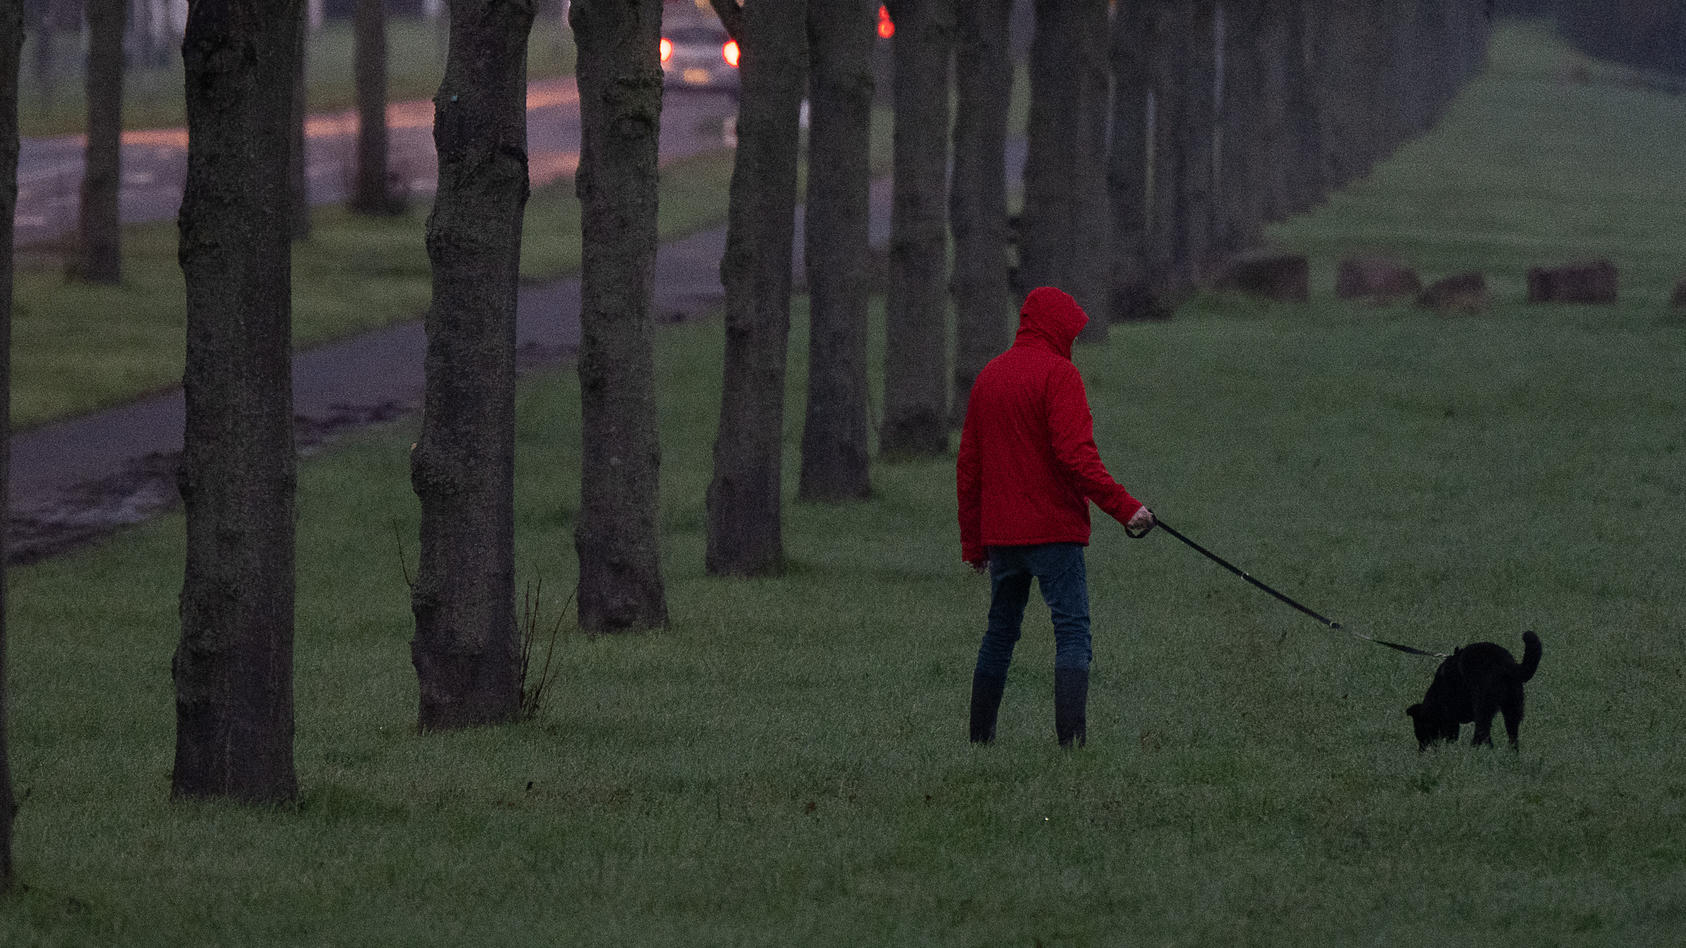 Beim abendlichen Spaziergang hinterlistig angegriffen - eine Horrovorstellung für Hundebesitzer. Doch das ist in England passiert - ähnlich wie es unser Motivbild darstellt.